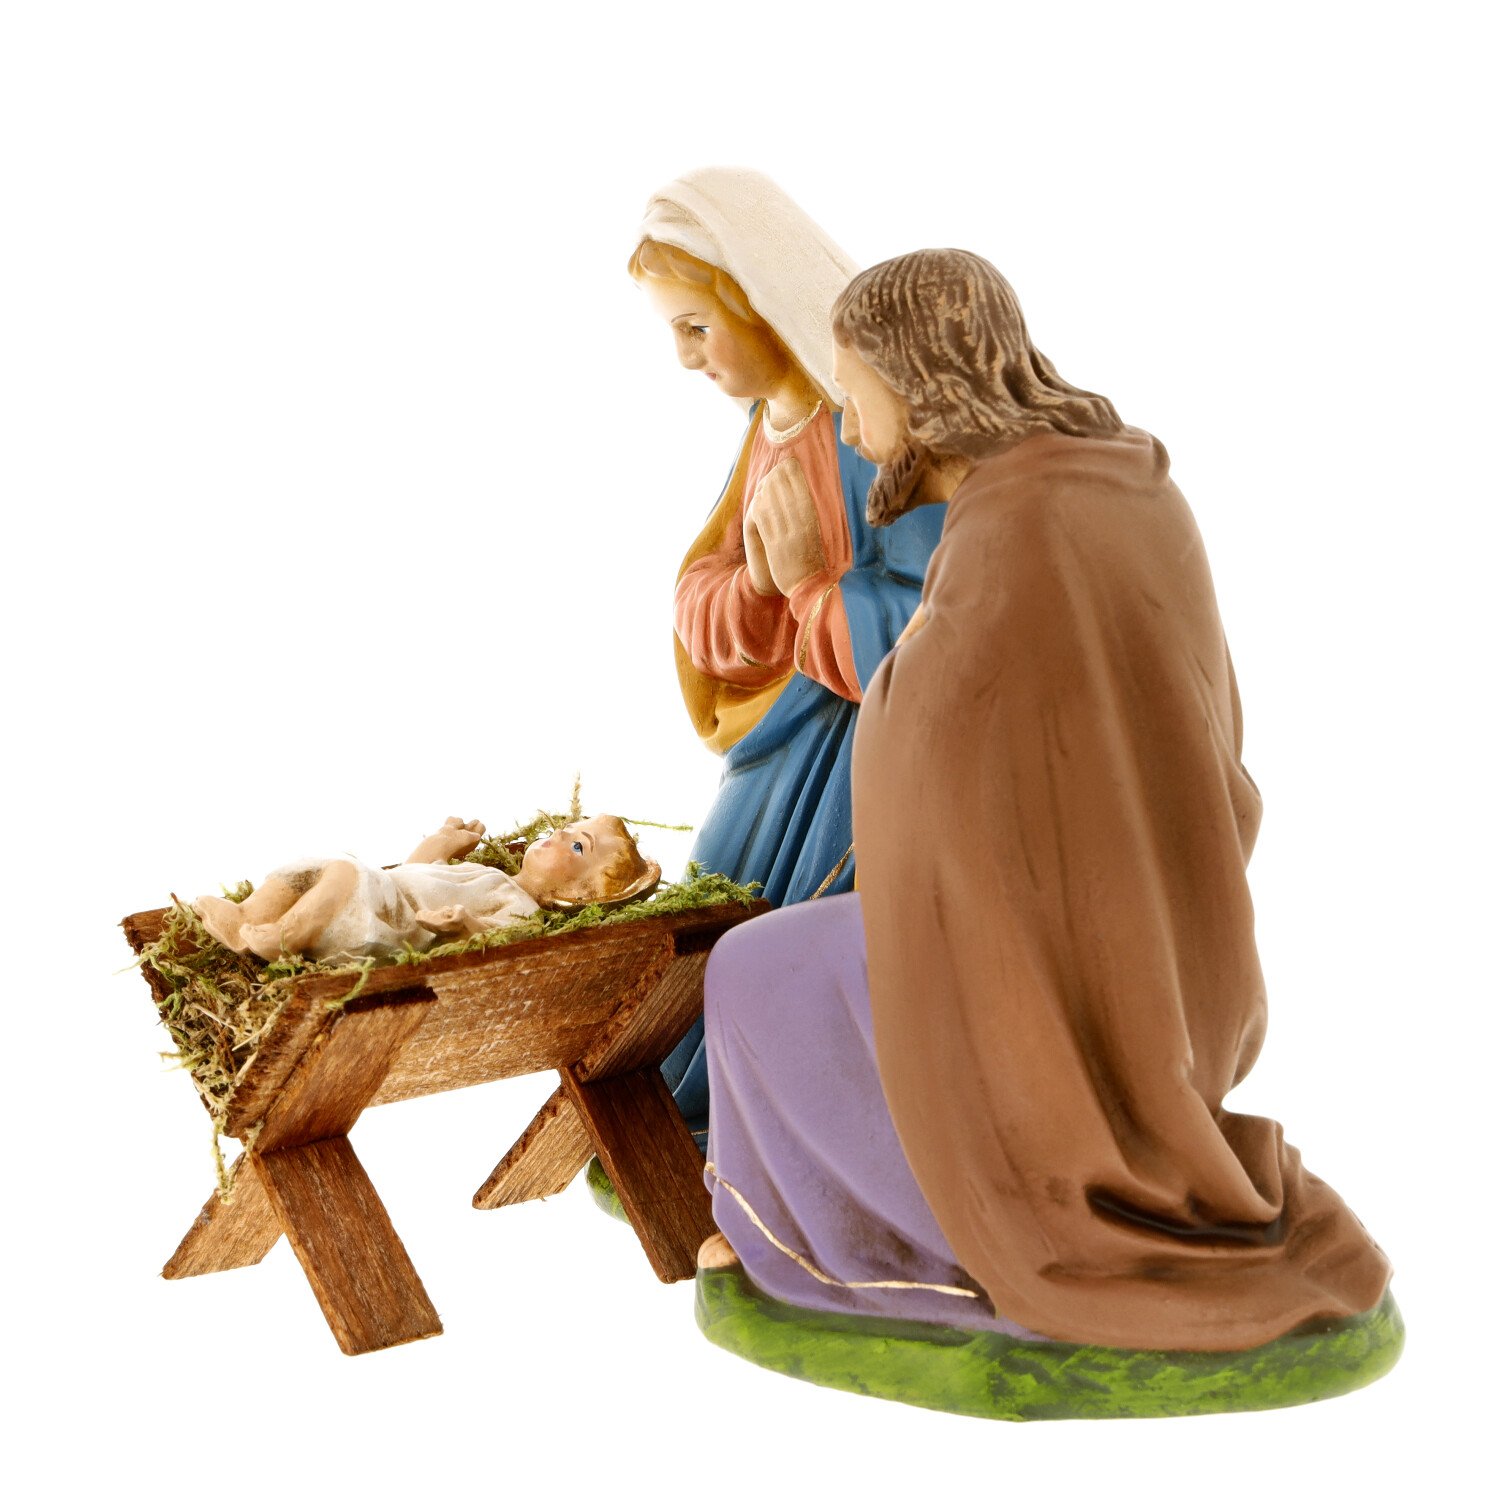 Holy family - Marolin Nativity figure - made in Germany